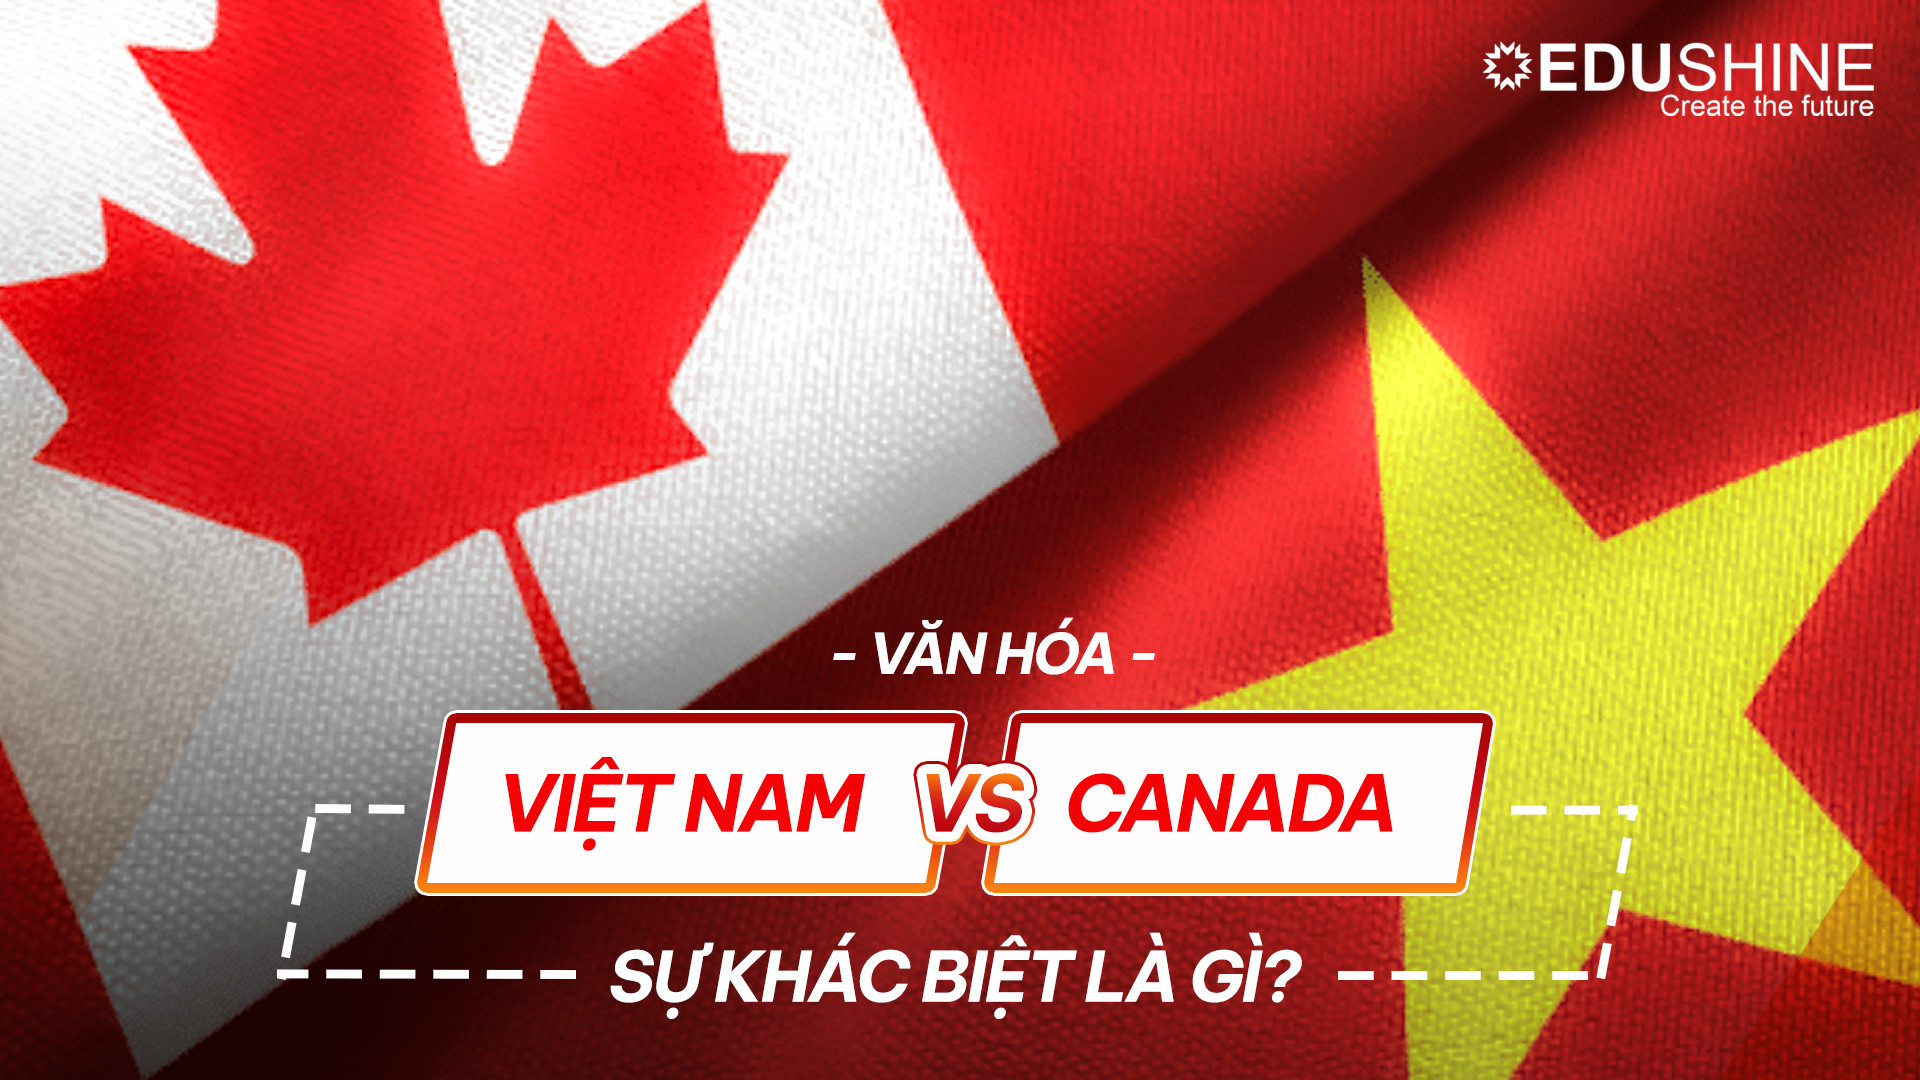 Văn hóa Canada và Việt Nam - Sự khác biệt là gì